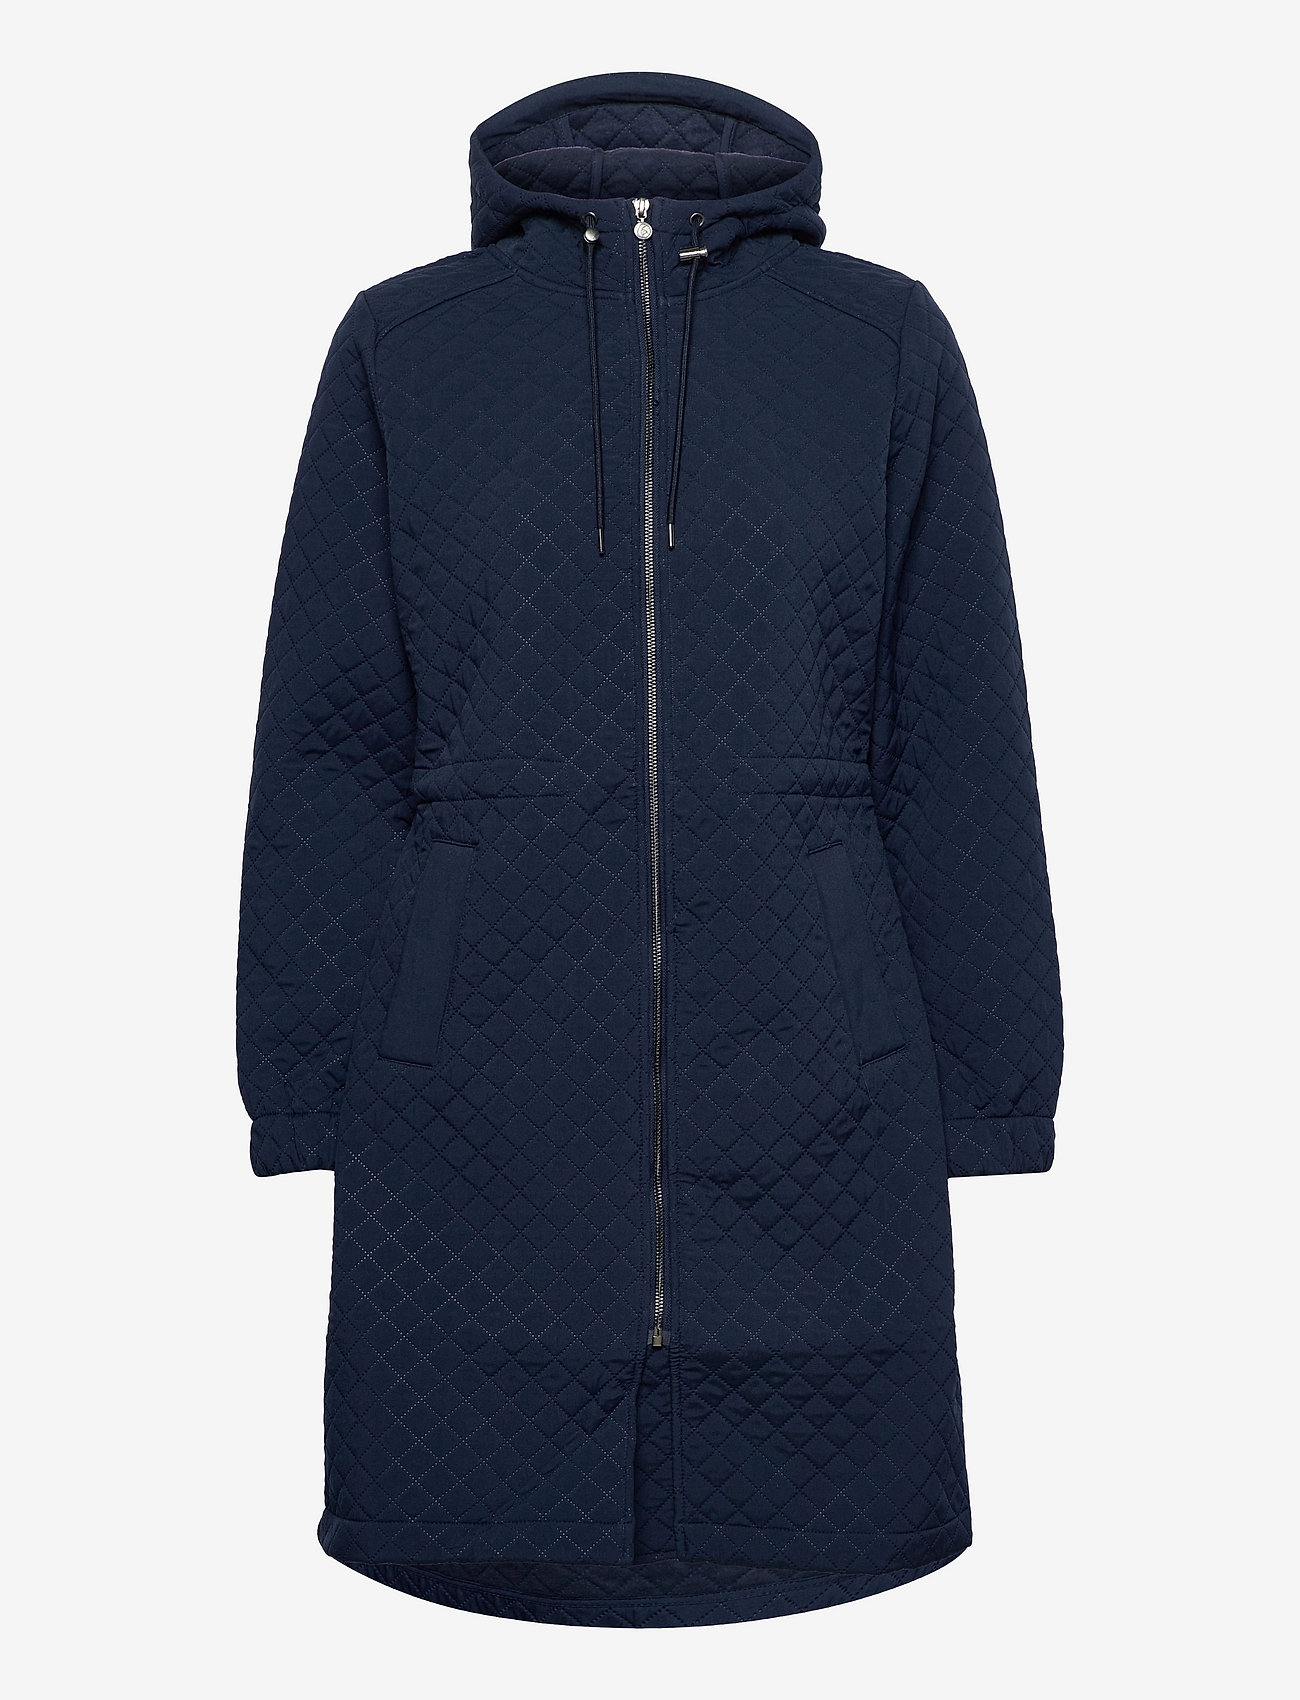 Rosemunde - Coat ls - spring jackets - navy - 0